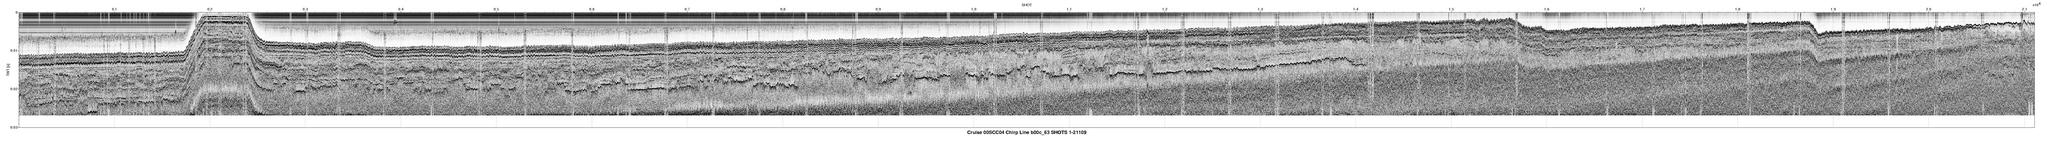 00SCC04 b00c_63 seismic profile image